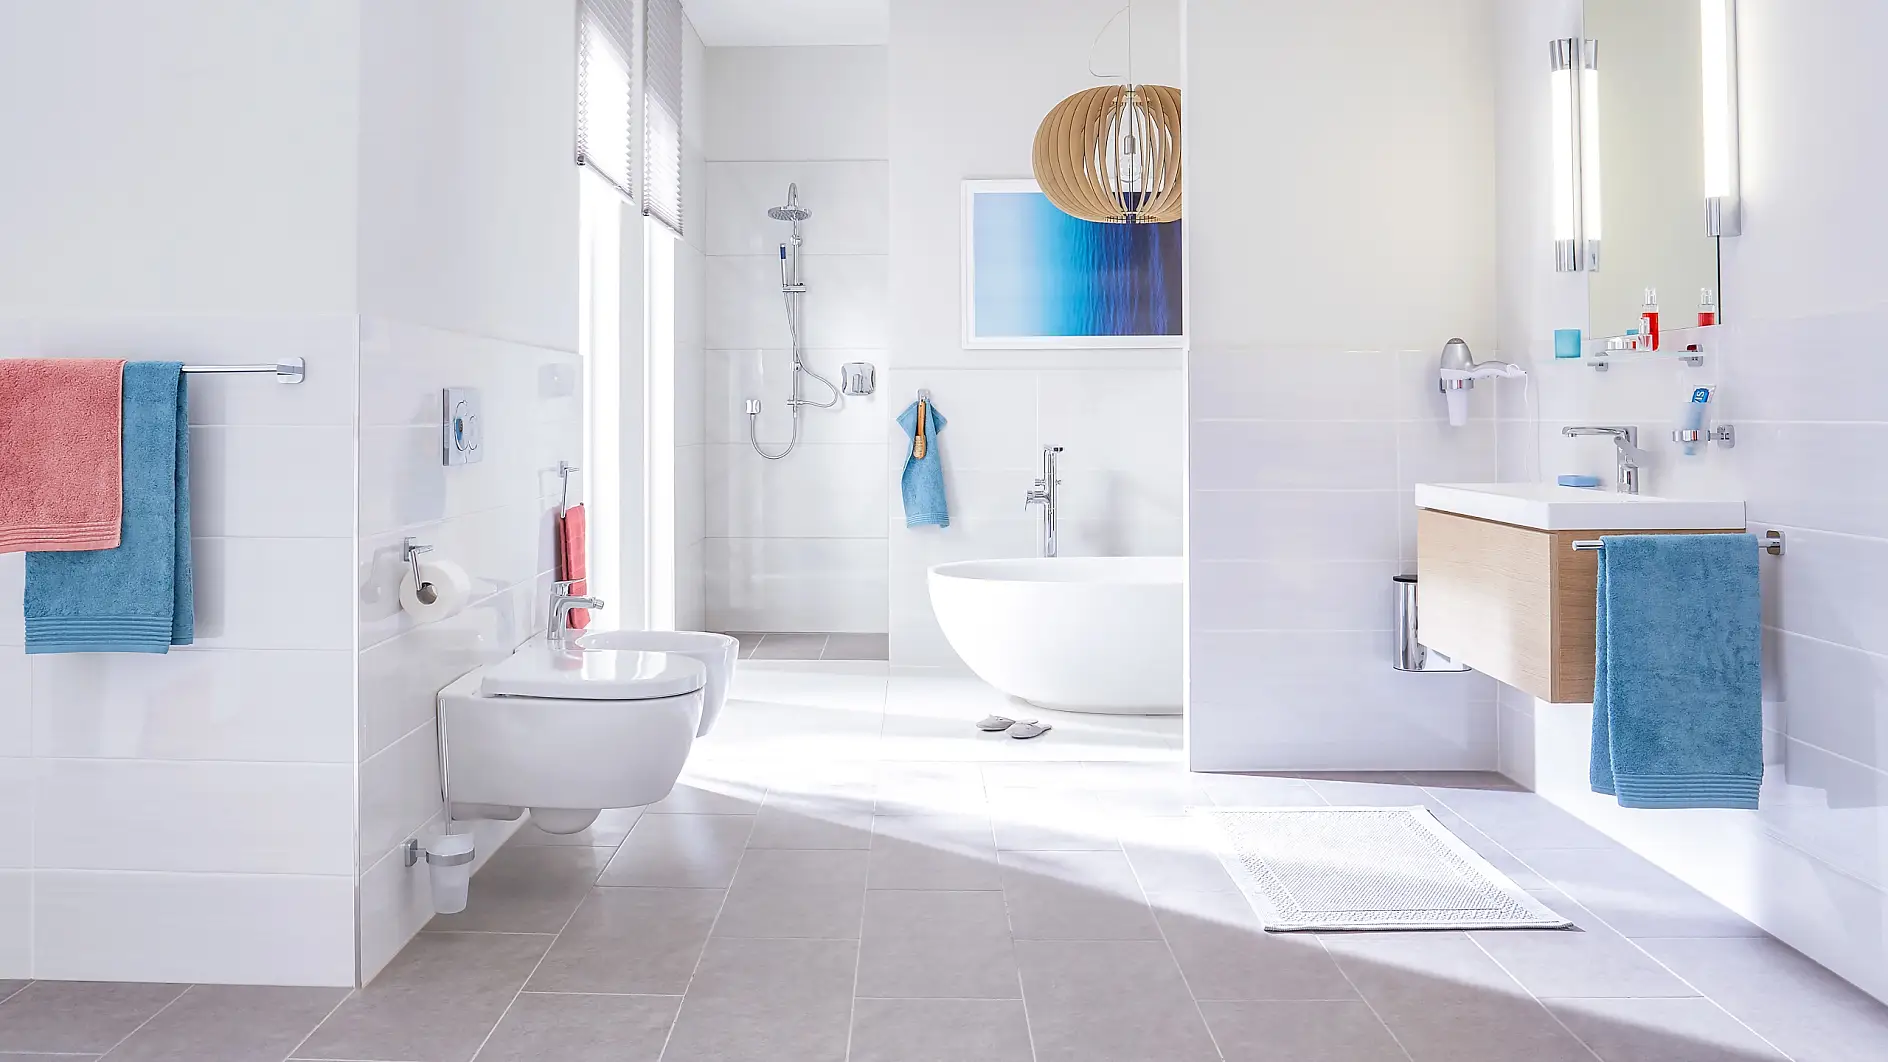 设计满足了奢华浴室对极致优雅的需求。